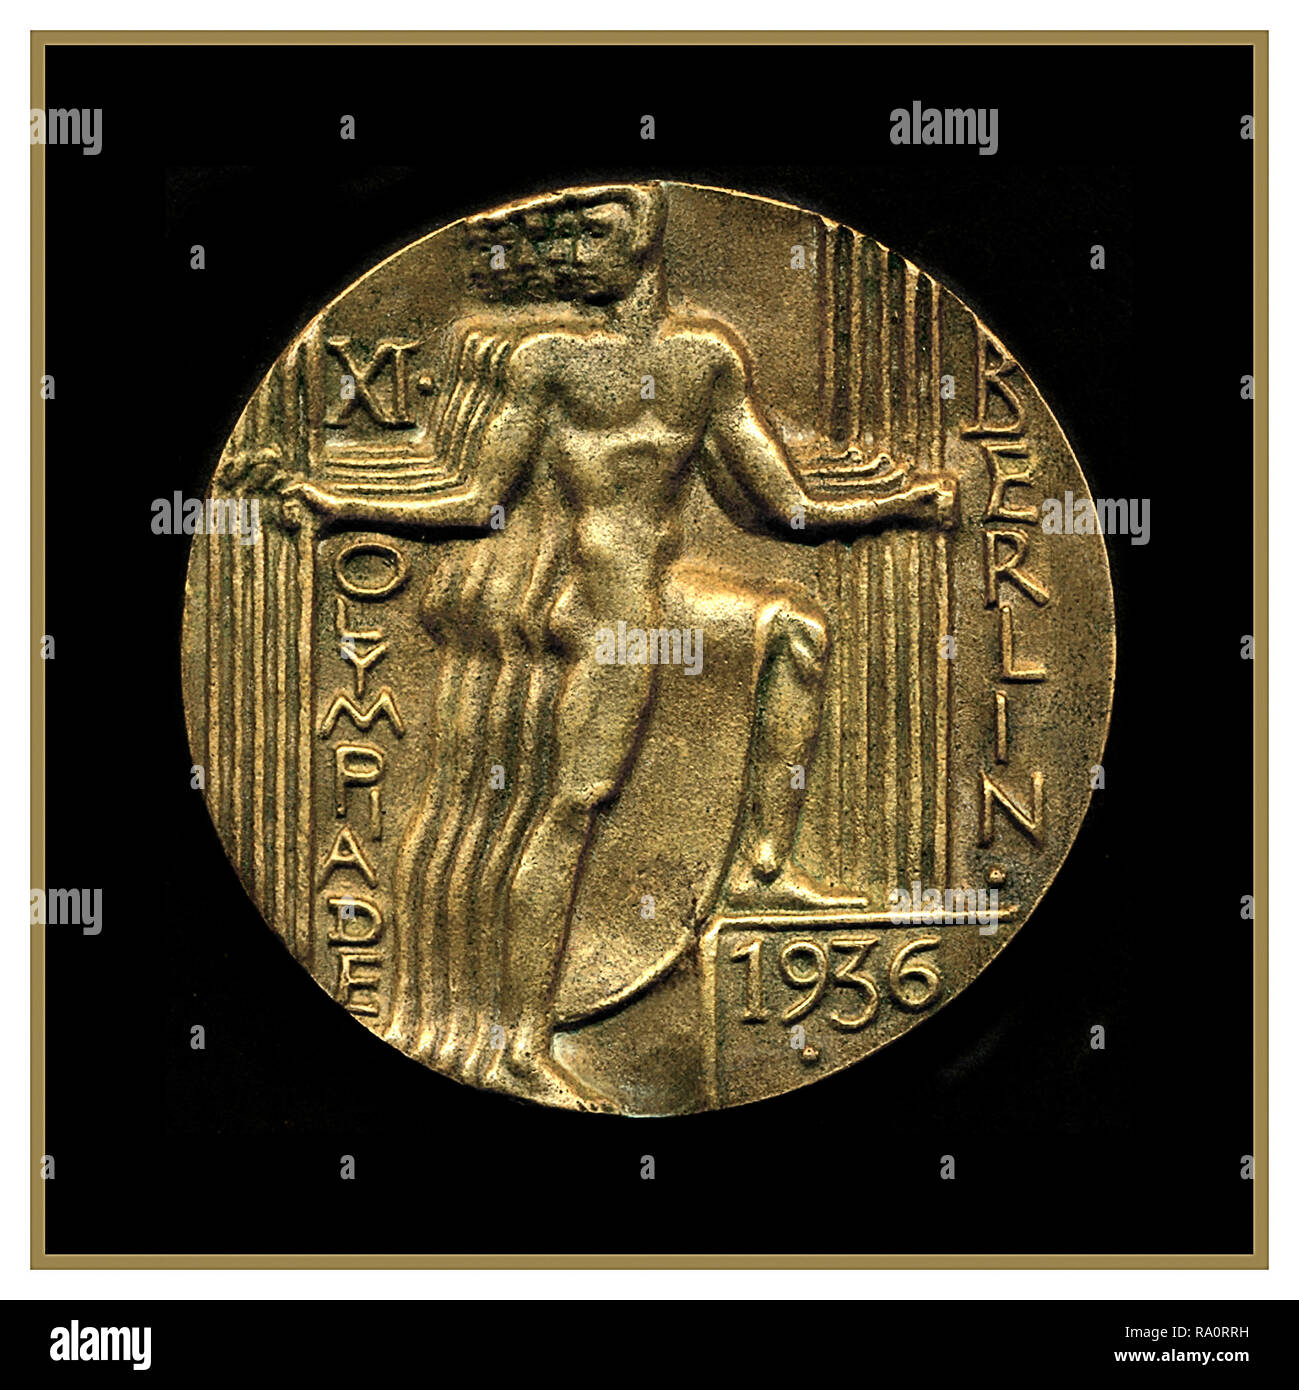 Les Jeux Olympiques Berlin 1936 Médaille d'or - Médaille officielle de participation des Jeux Olympiques à Berlin Allemagne nazie 1936. Banque D'Images